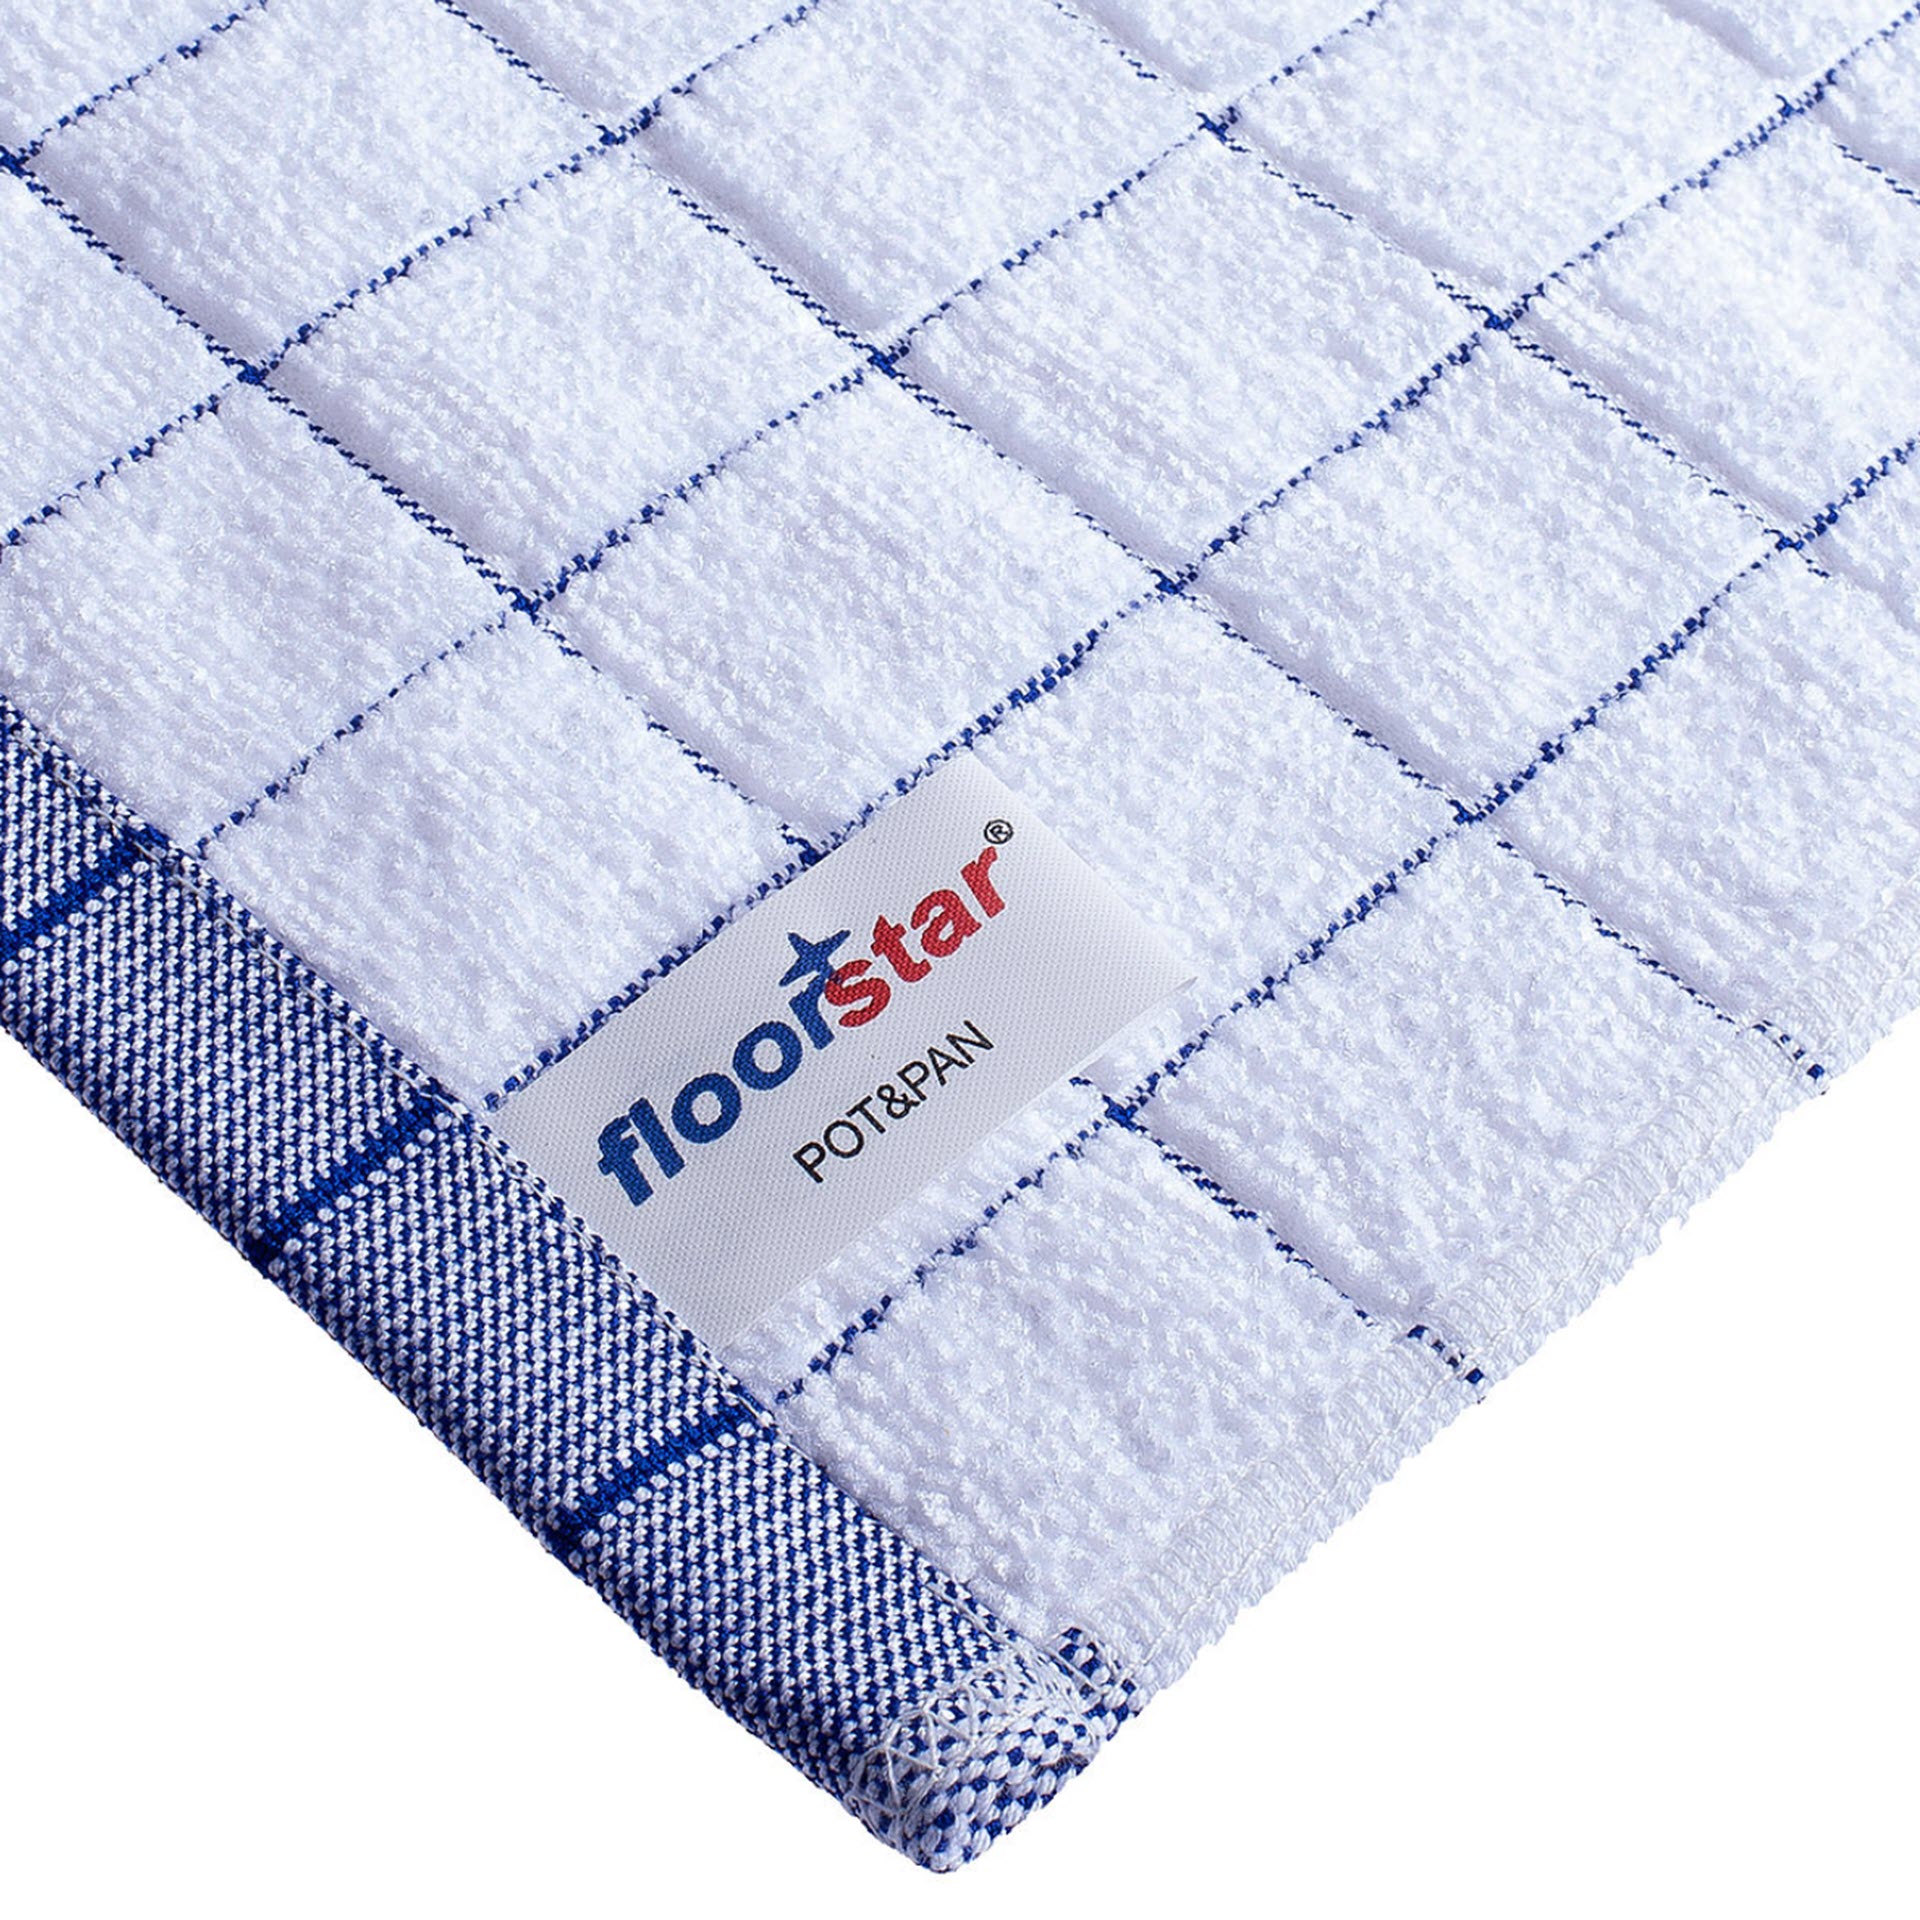 Floorstar Profi Microfaser - Geschirrtuch POT & PAN - 5er Pack (gelb-weiß)